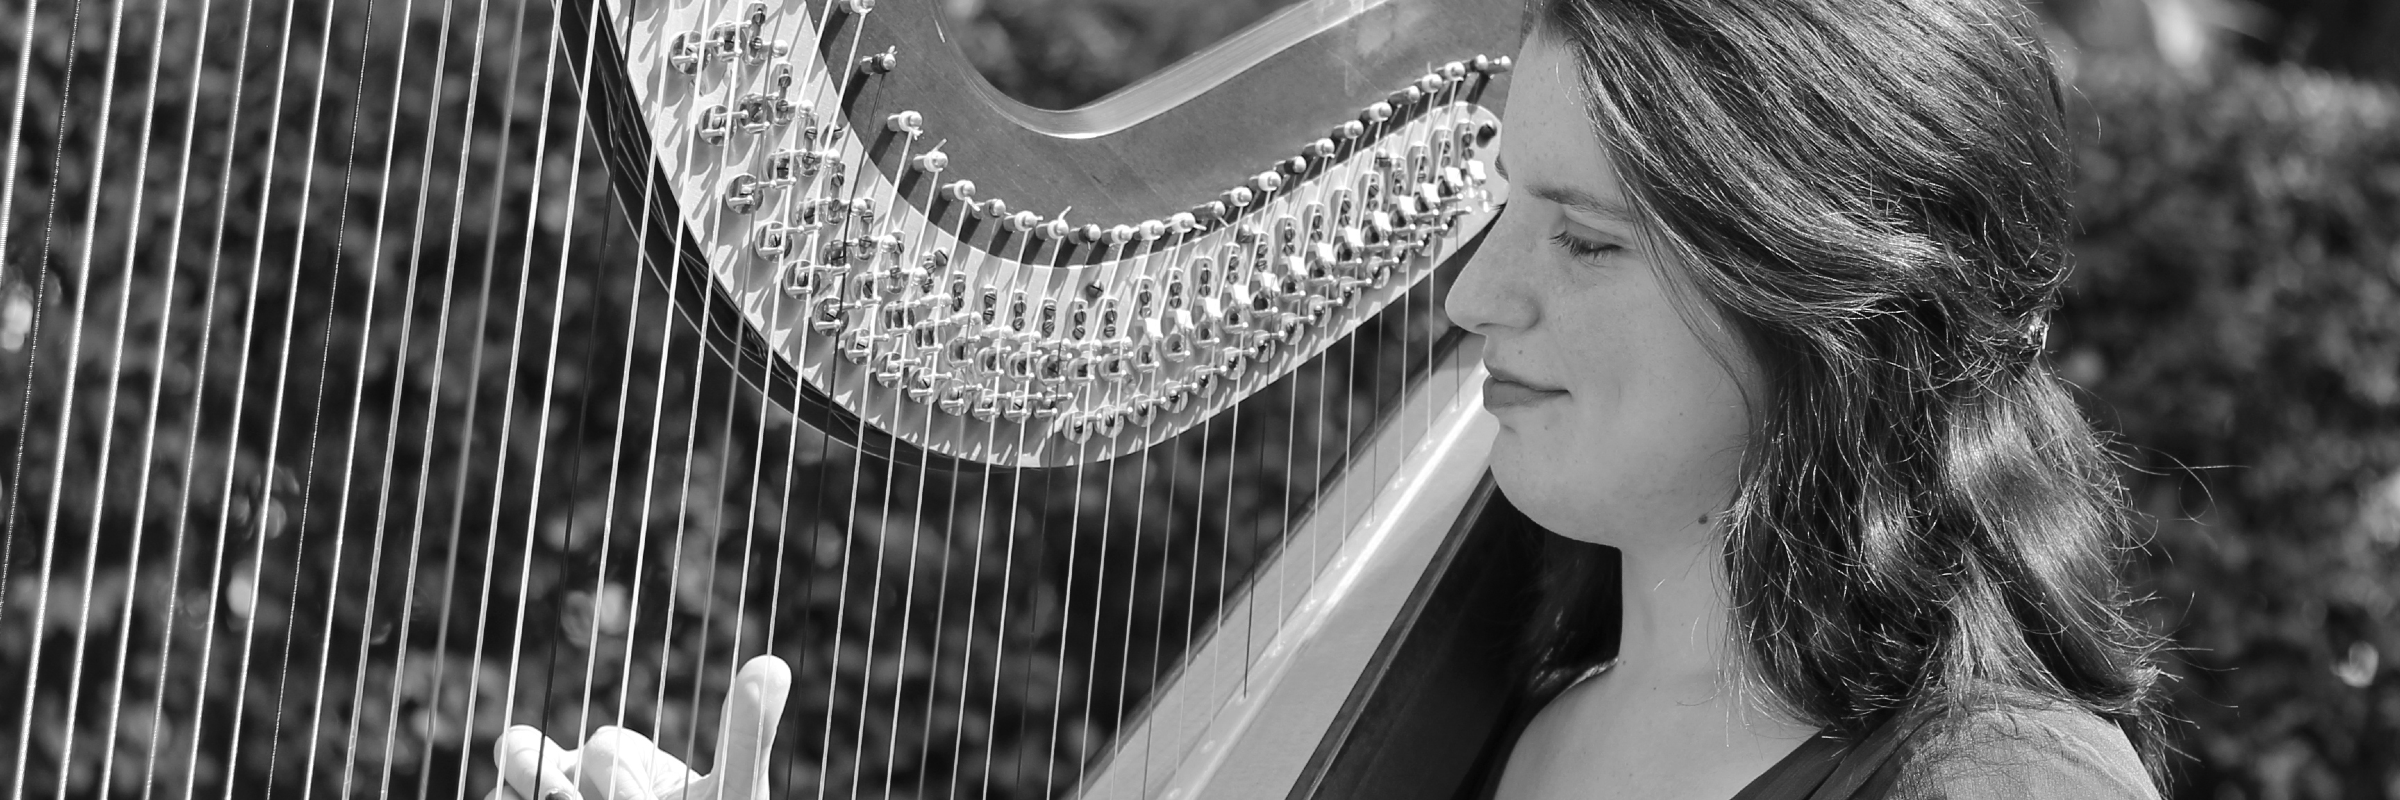 Flora Francescut, musicien Musique Celtique en représentation à Loire - photo de couverture n° 4